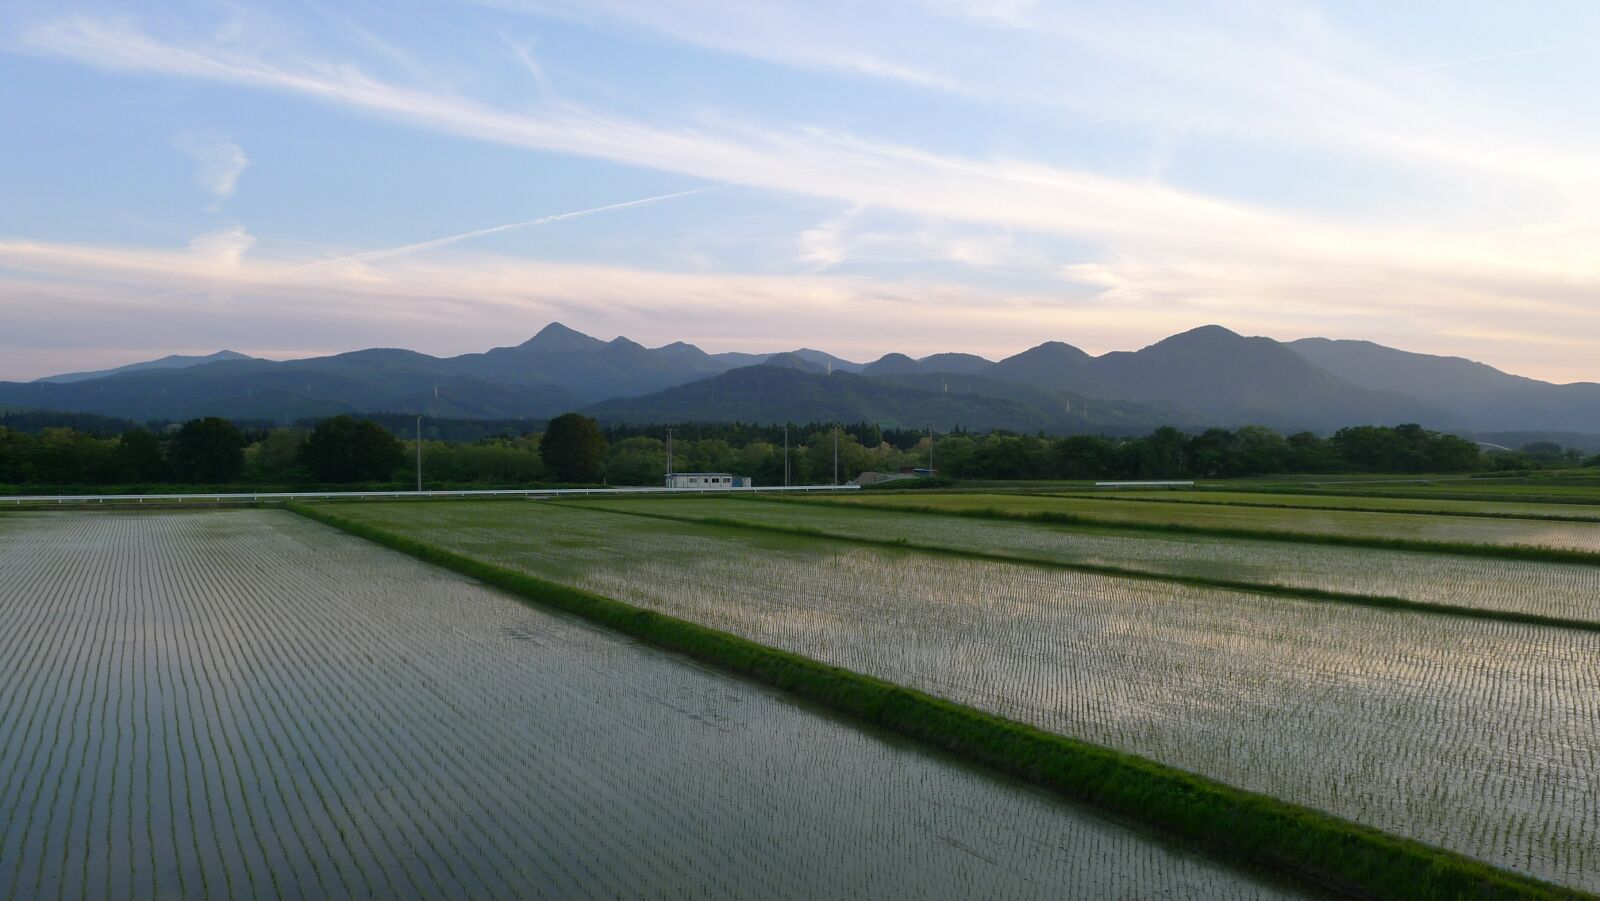 Panasonic Lumix DMC-LX5 sample photo. Countryside, yamada's rice fields photography